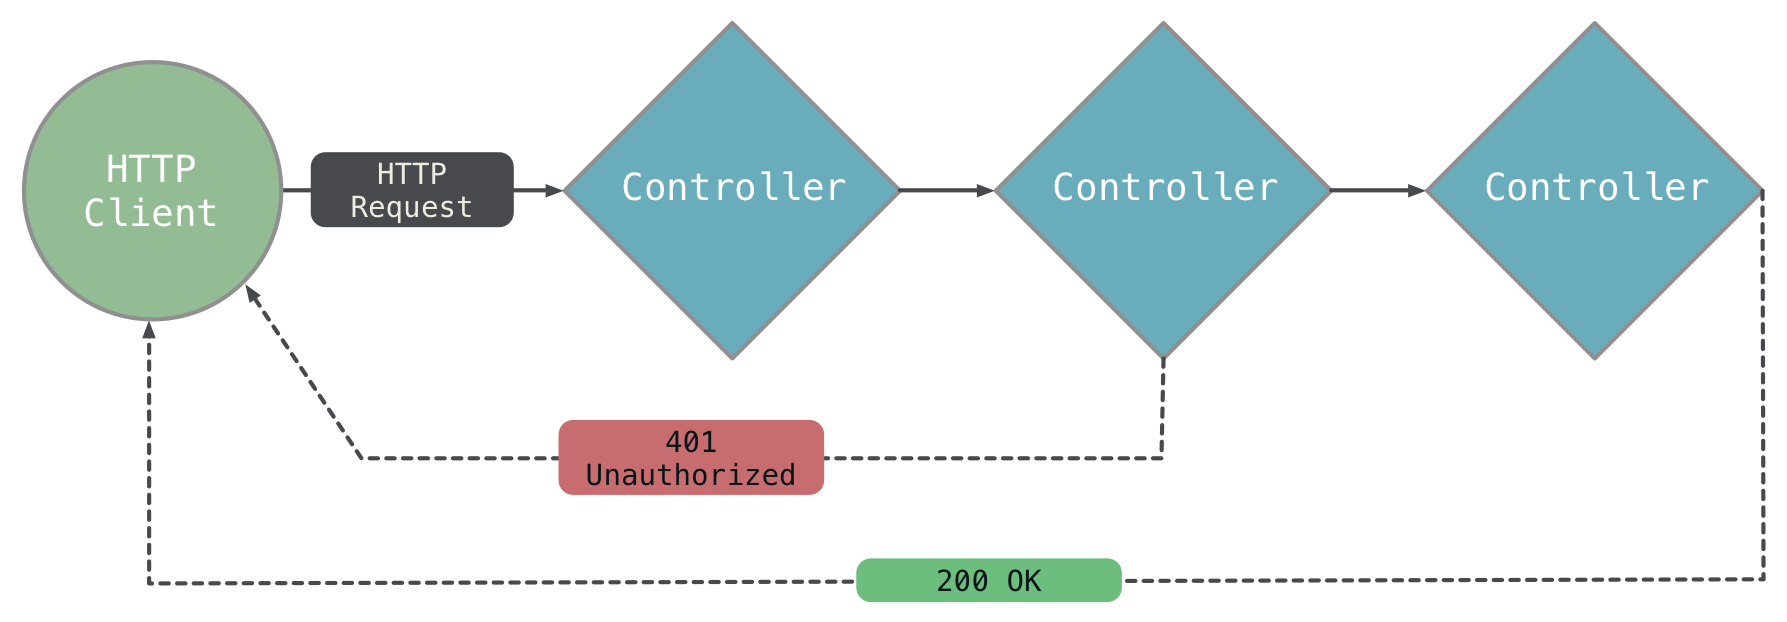 Simple Controller Diagram